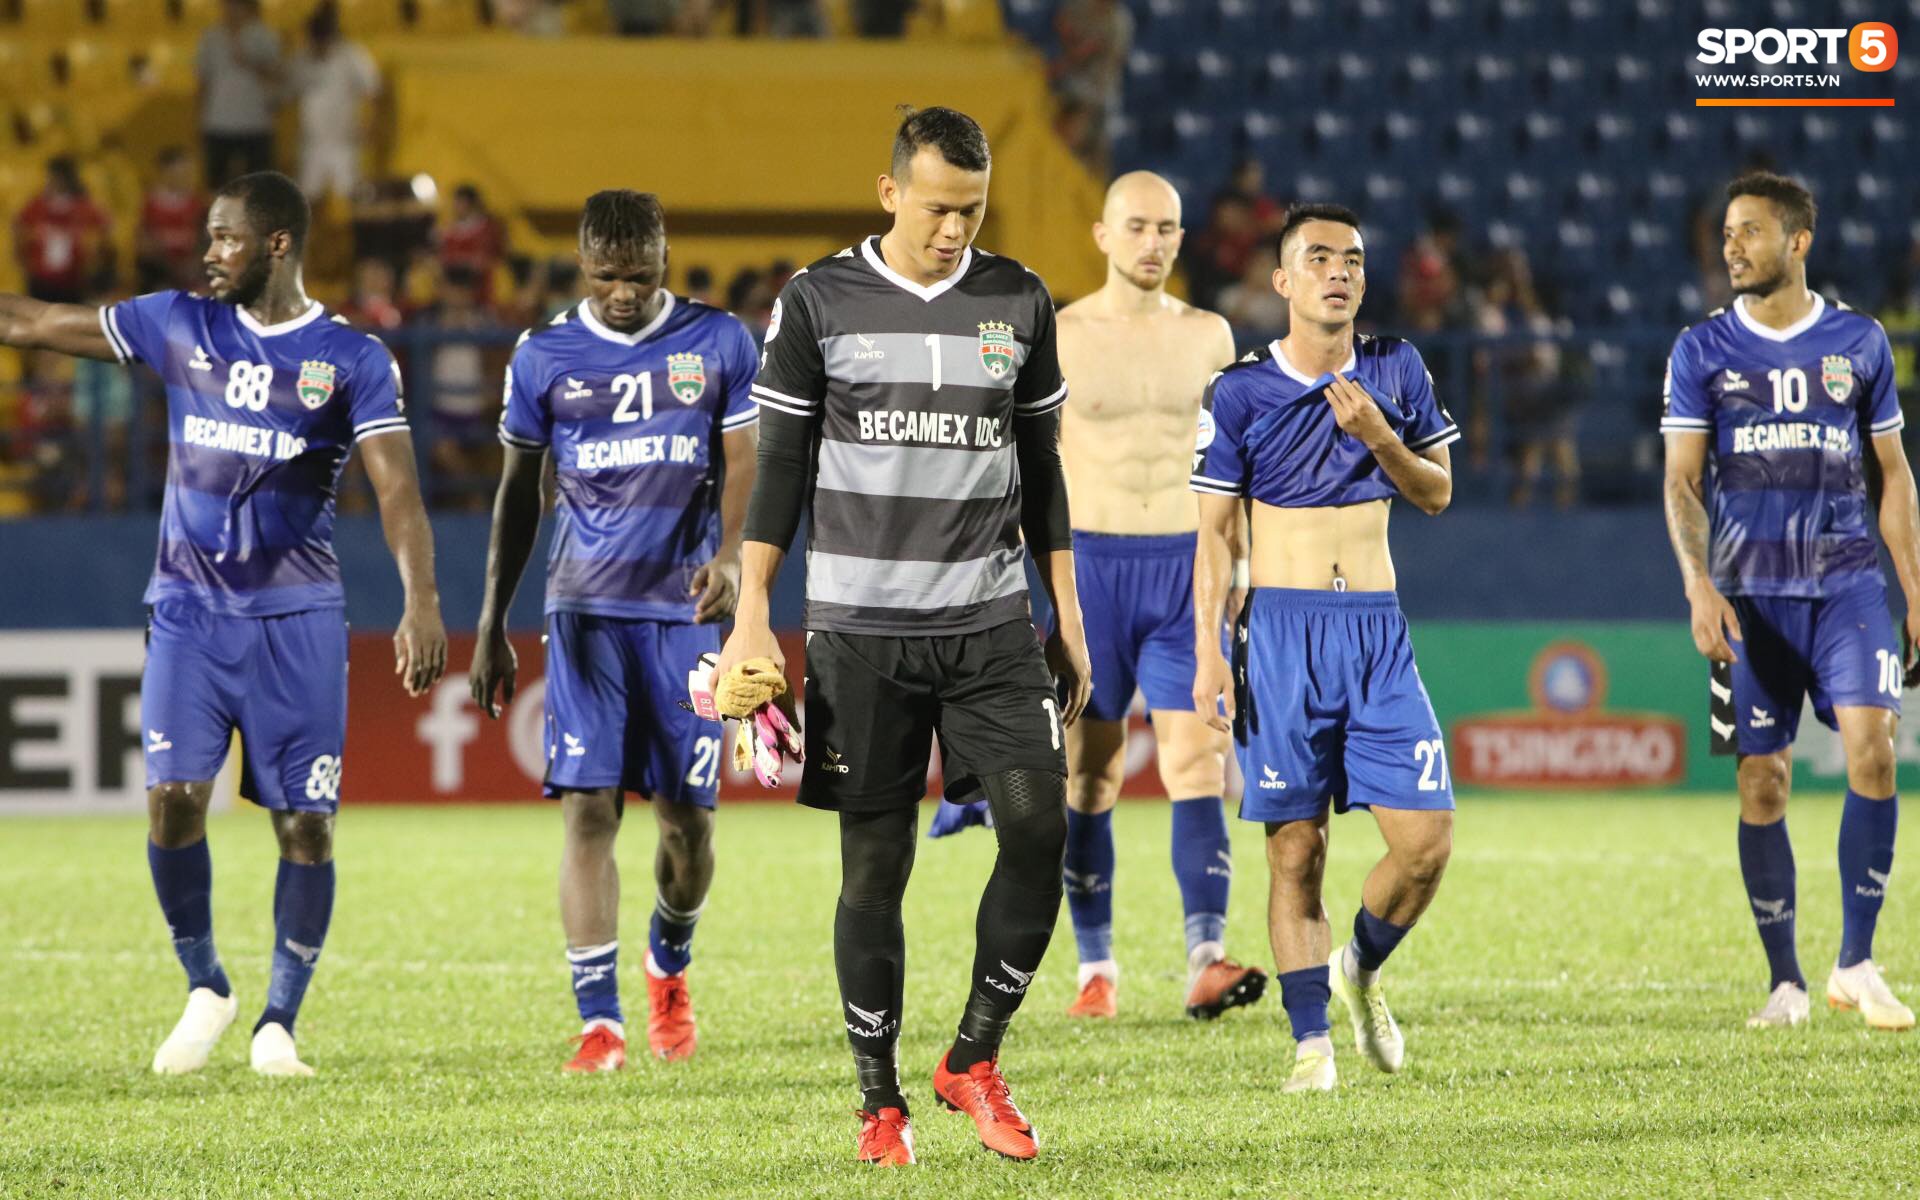 Để thua dễ 3 bàn ở AFC Cup, thủ môn Tấn Trường của Bình Dương bị nghi bán độ